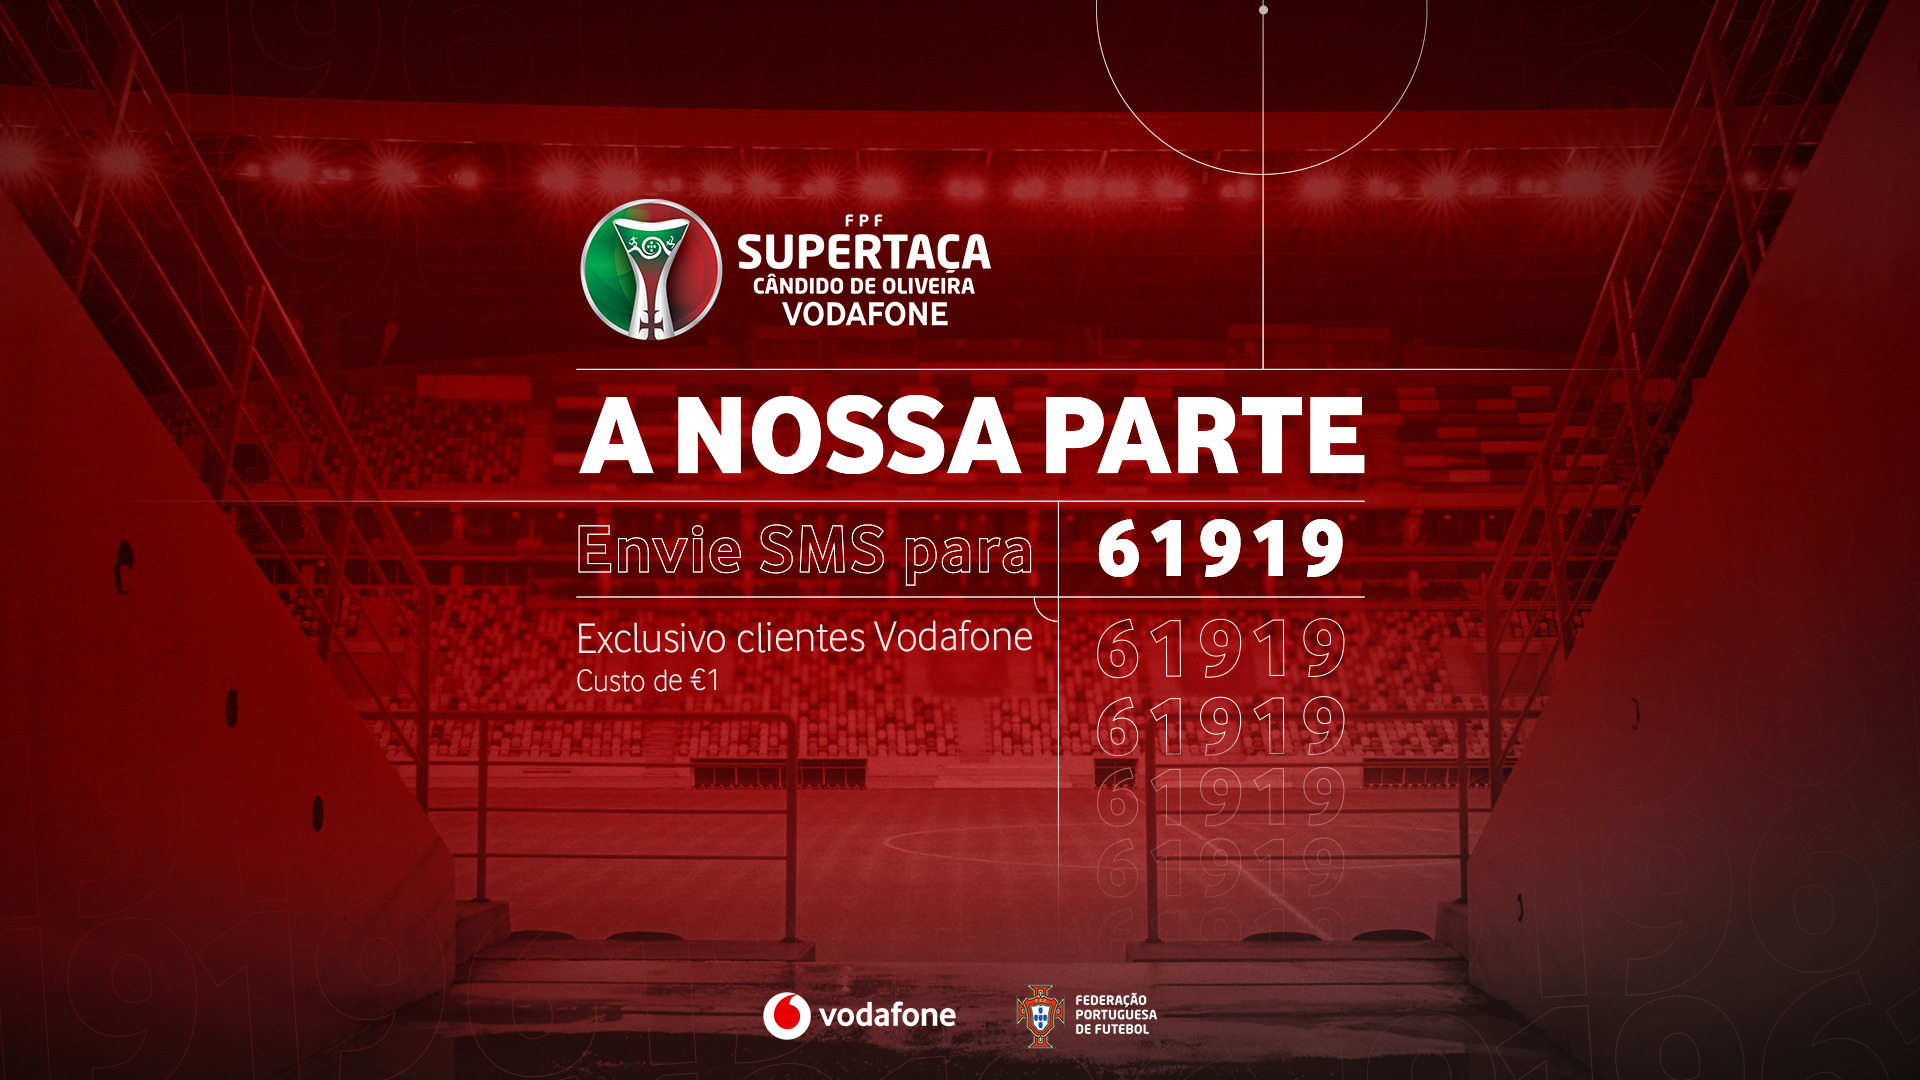 , Vodafone promove ação solidária na Supertaça Cândido de Oliveira a favor do combate à COVID-19